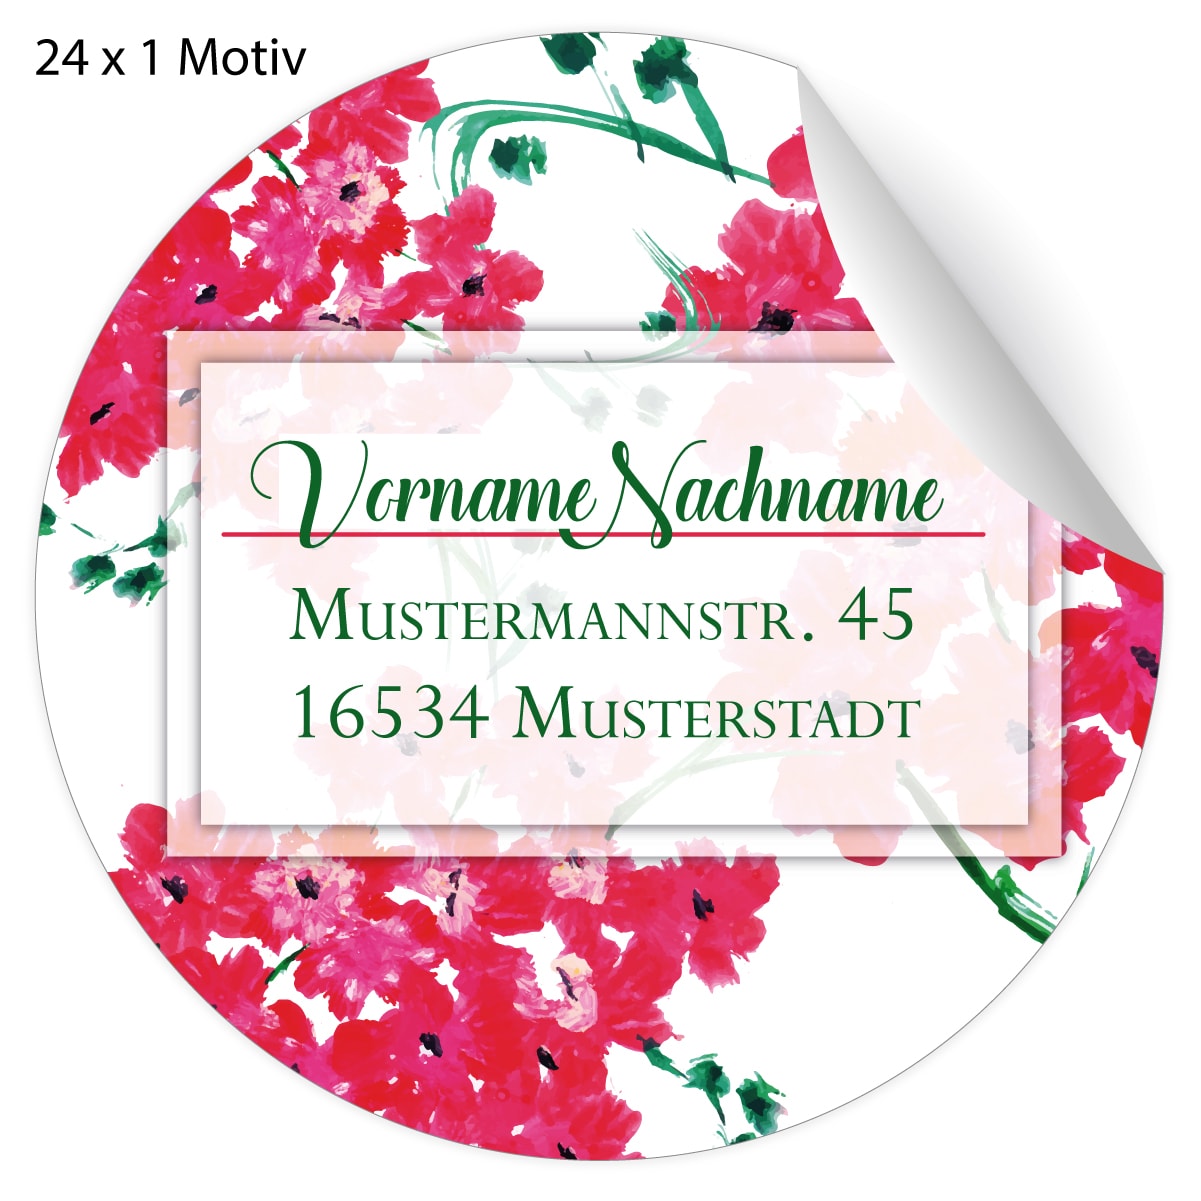 Kartenkaufrausch: Adress Aufkleber auf edlen Blüten aus unserer florale Papeterie in rosa